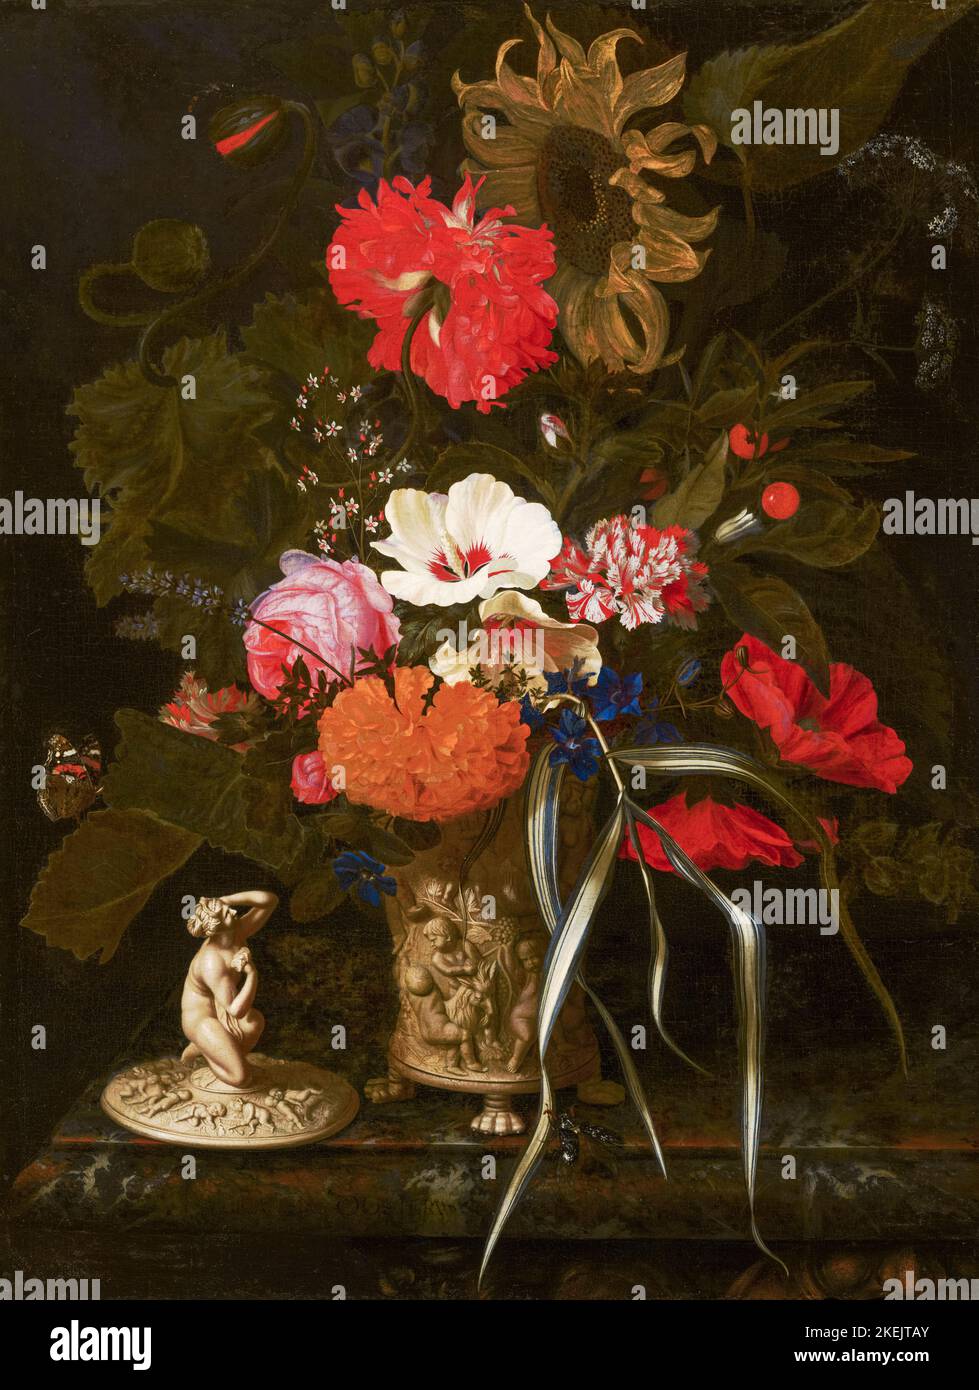 Maria van Oosterwyck peinture encore en vie, fleurs dans un vase ornemental, huile sur toile, 1670-1675 Banque D'Images